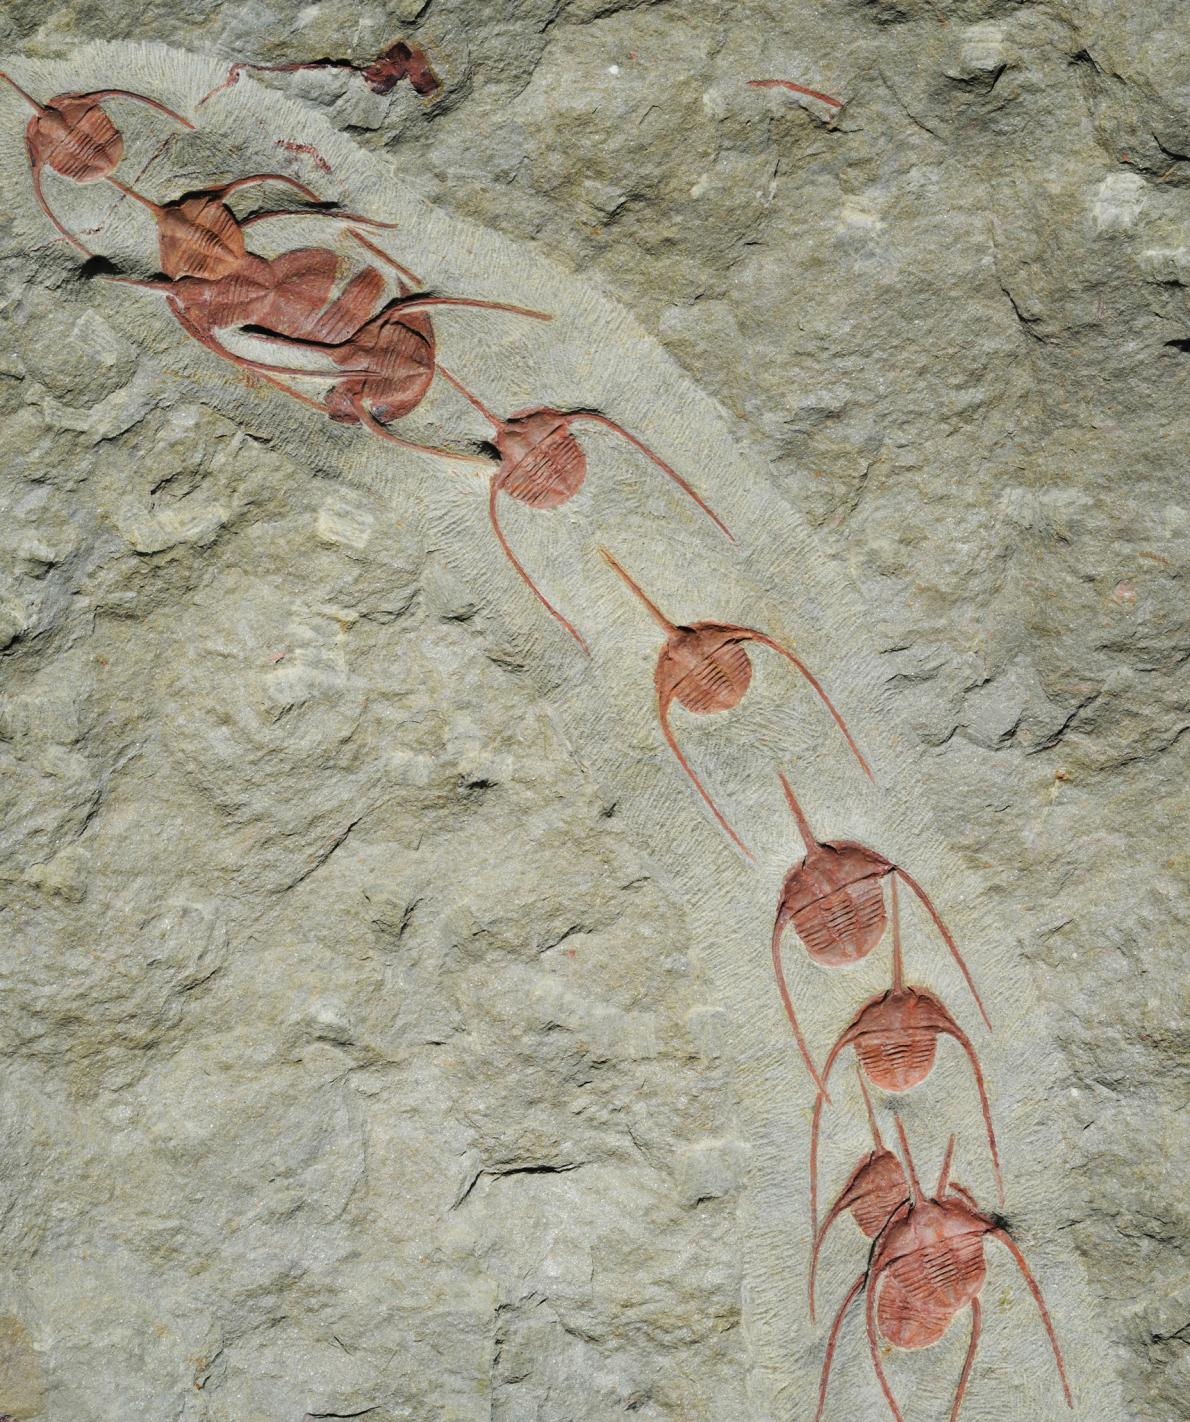 新發現的古頭帶蟲屬（Ampyx）三葉蟲化石證實這種遠古海洋生物會集結成線狀群集，目的可能是為了遷徙或交配。PHOTOGRAPH BY JEAN VANNIER, UNIVERSITÉ DE LYON 